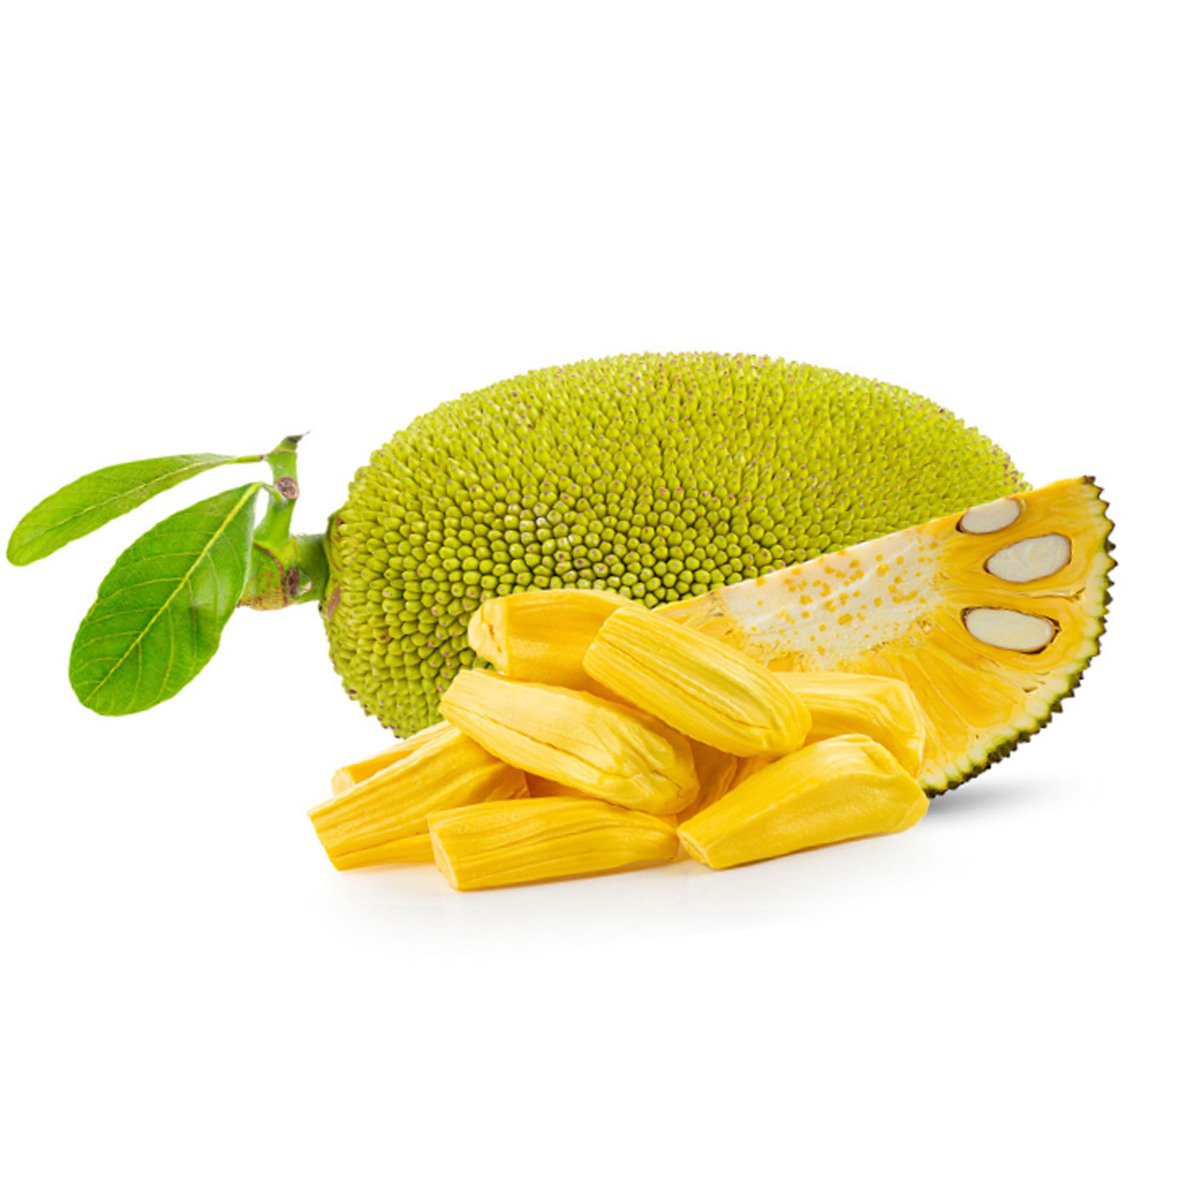 Buy Honey Jackfruit 1 pkt Online at Best Price | Exotic | Lulu UAE in UAE